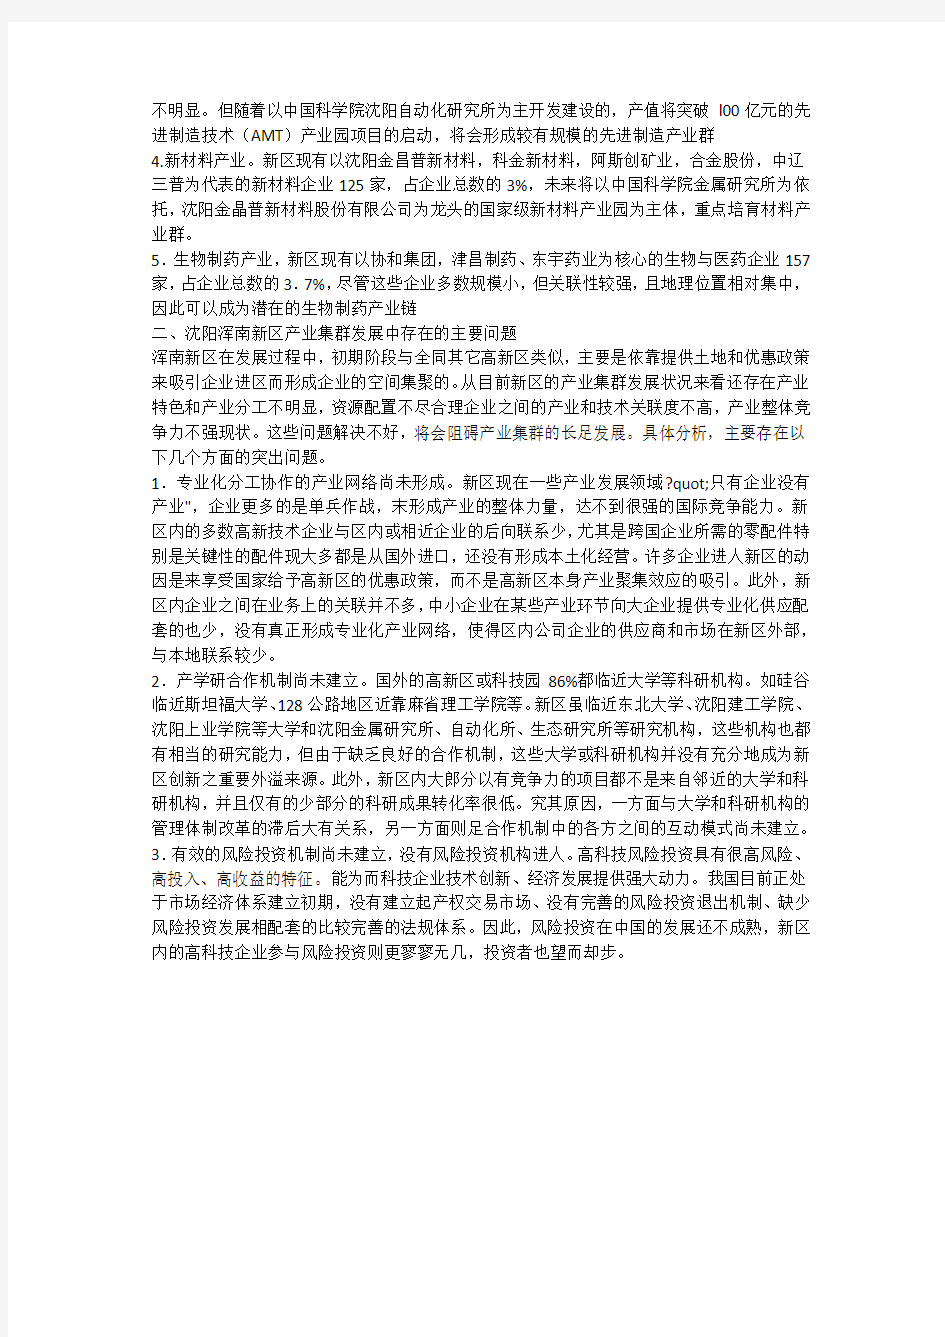 沈阳浑南新区产业集群发展战略研究(一)